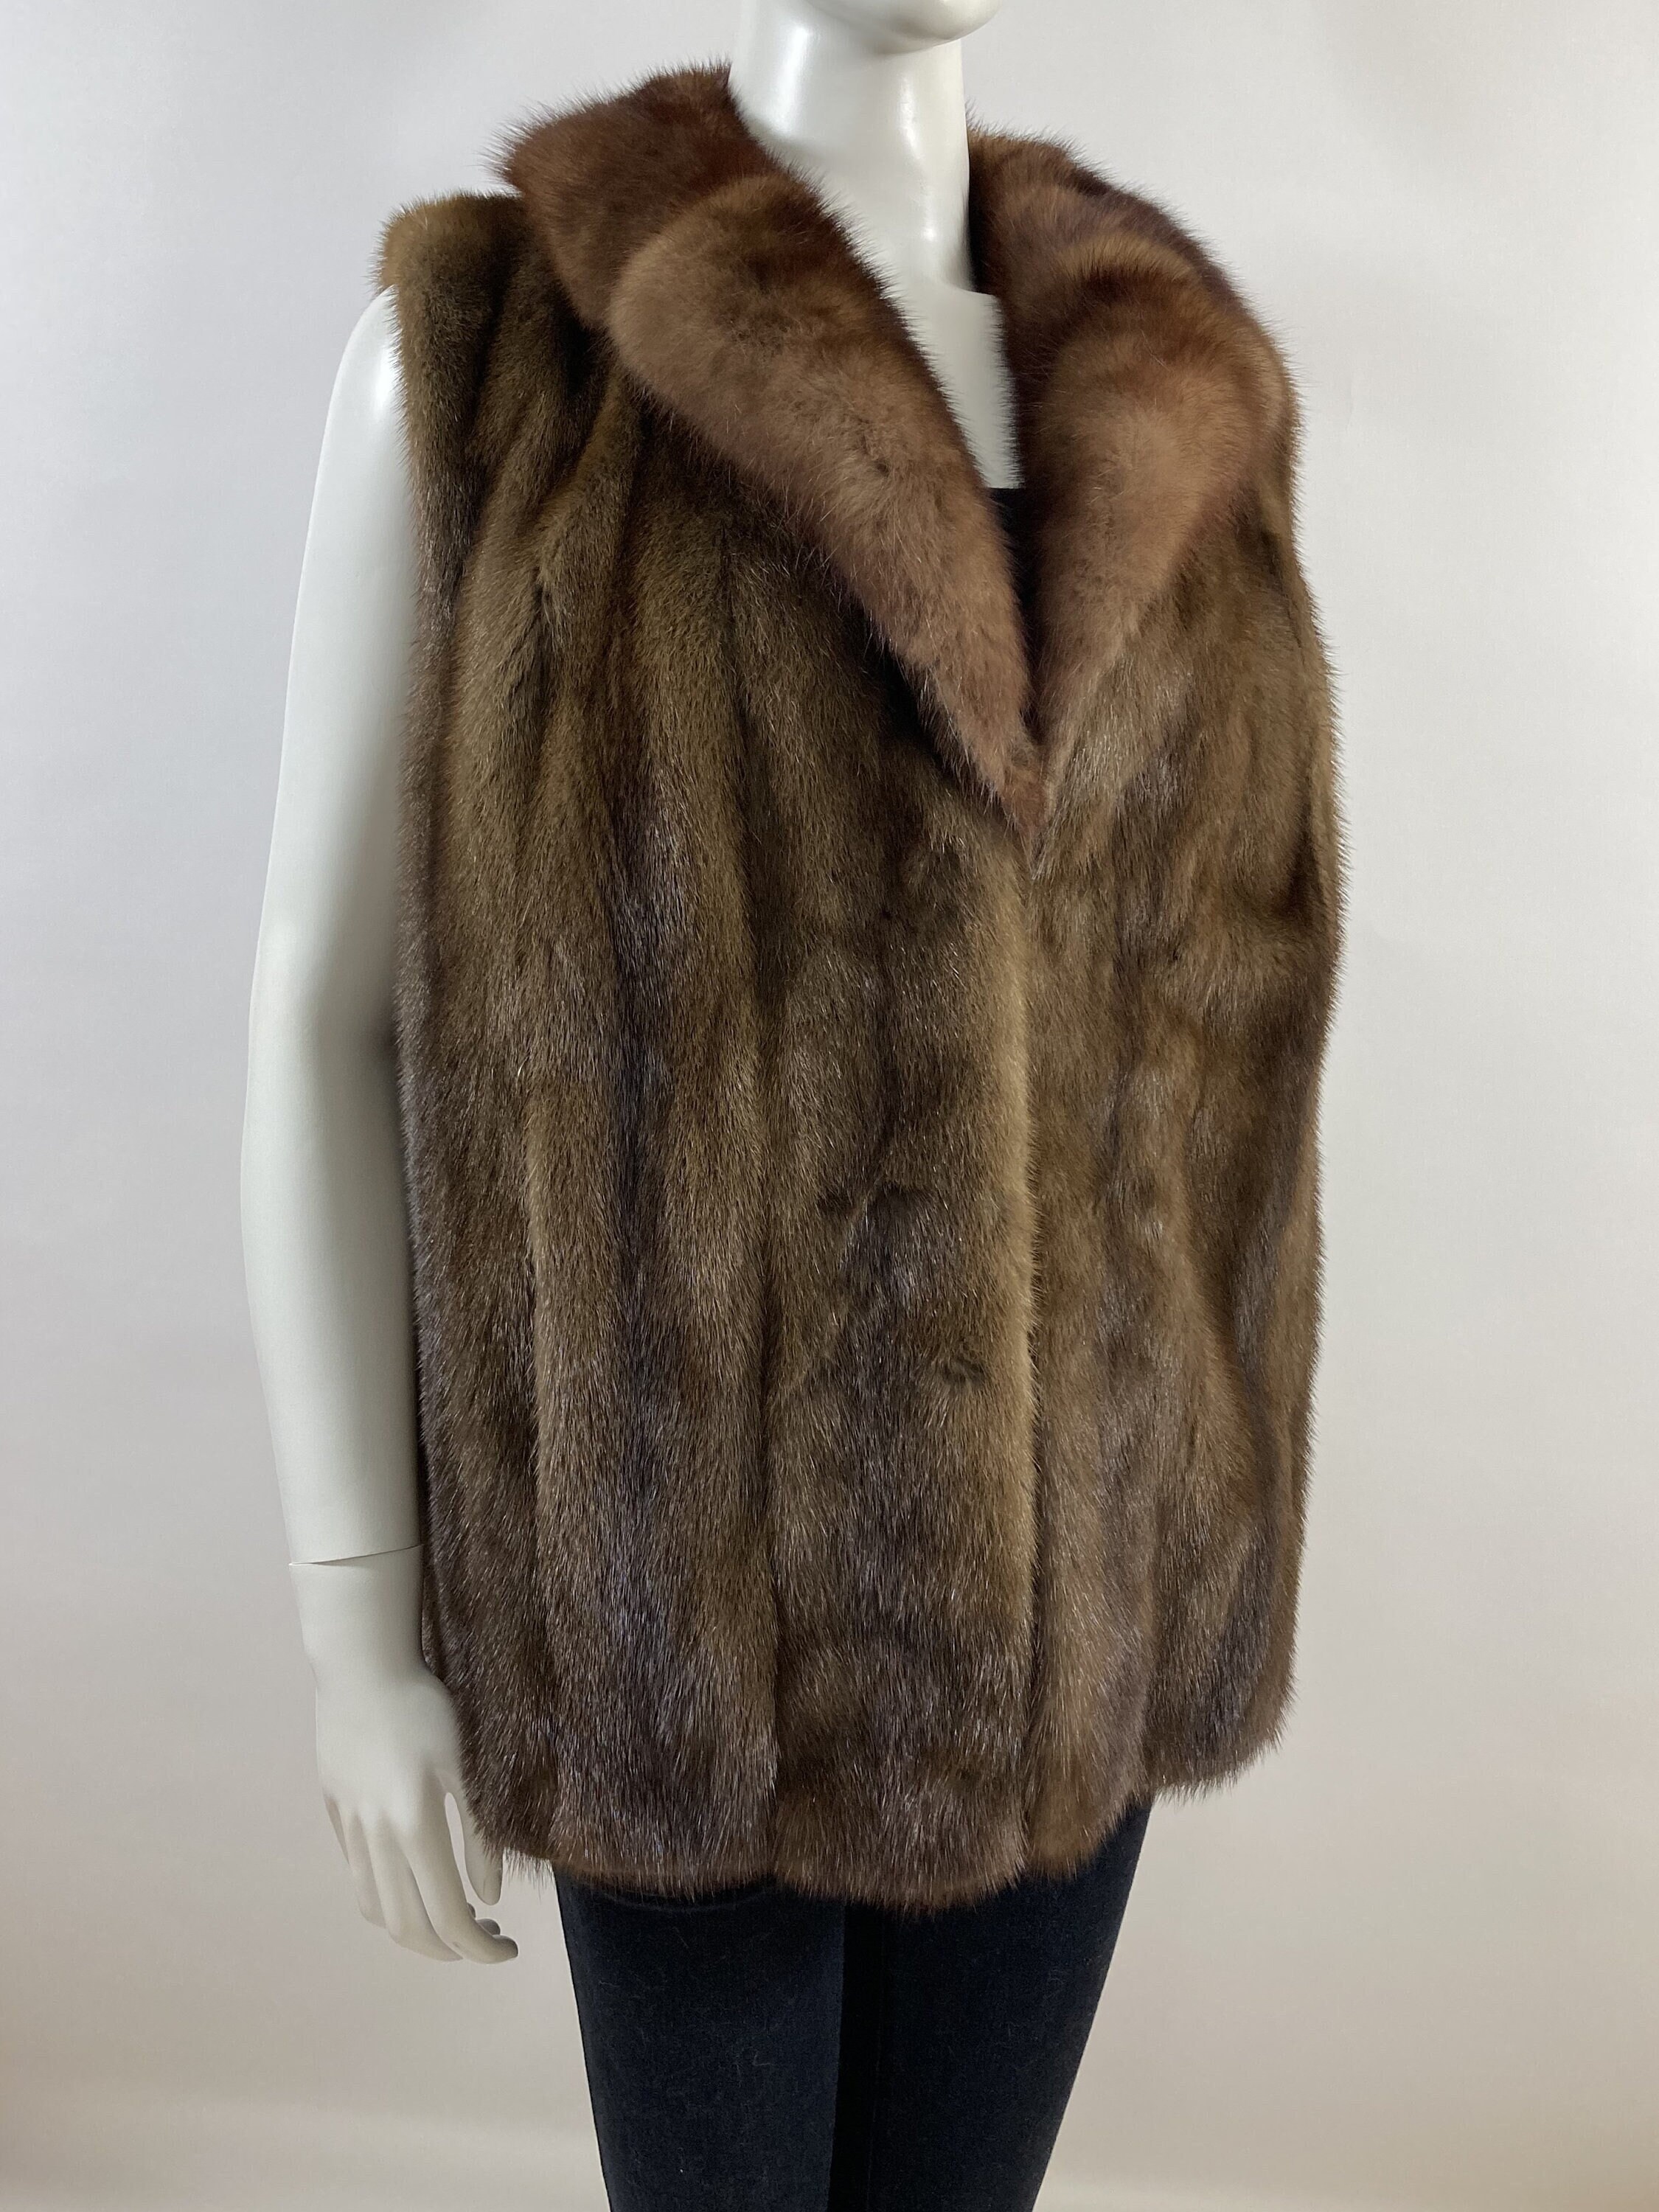 Vintage fine furs Leafgren Chestnut Brown Mink Coat with a